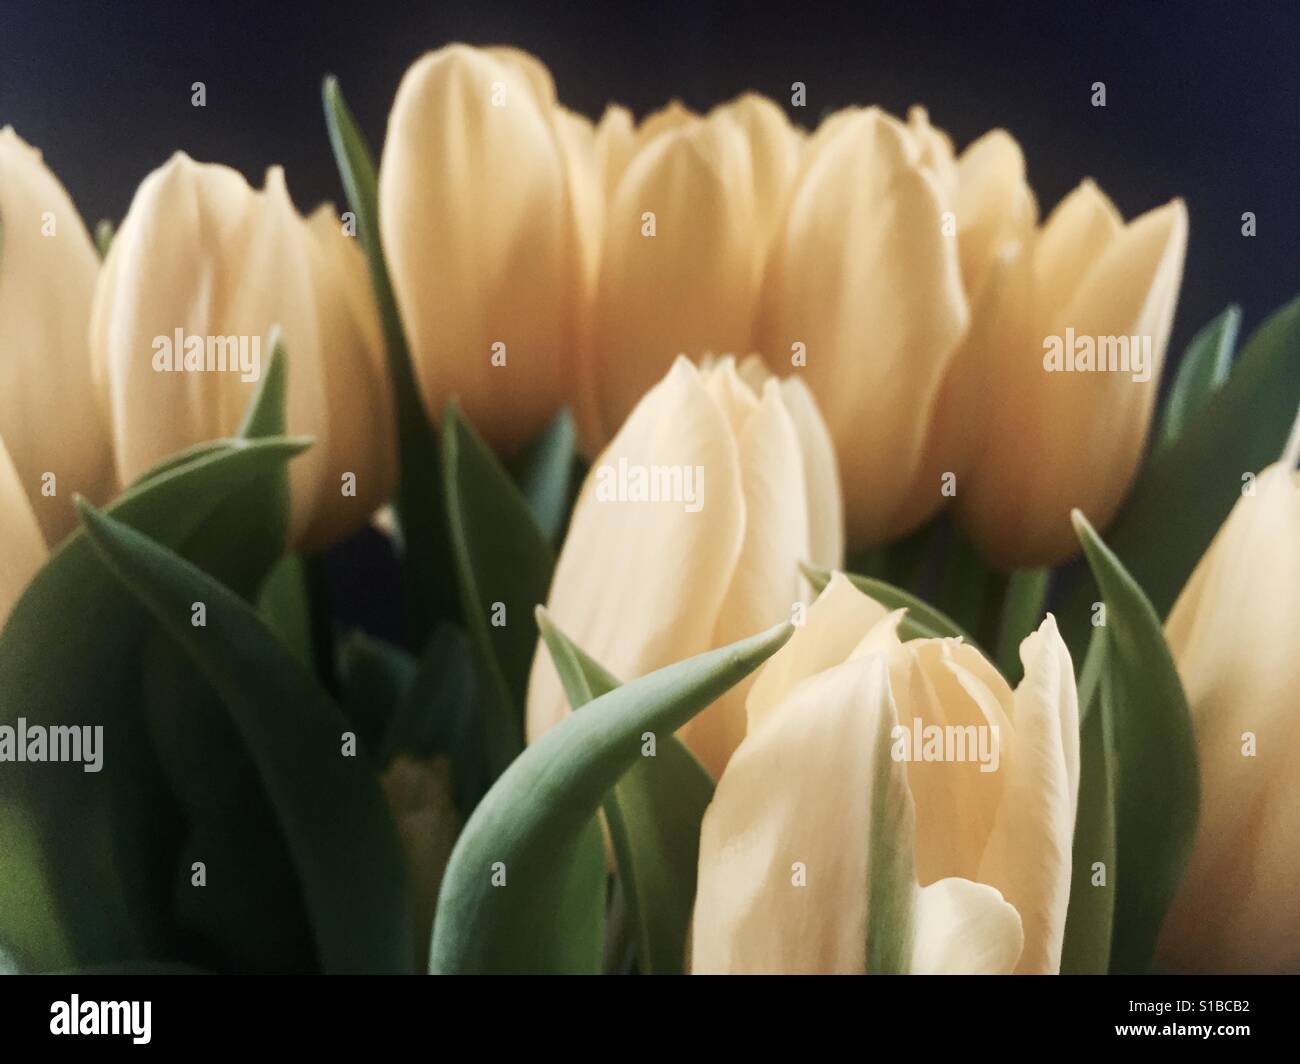 Yellow tulips Stock Photo